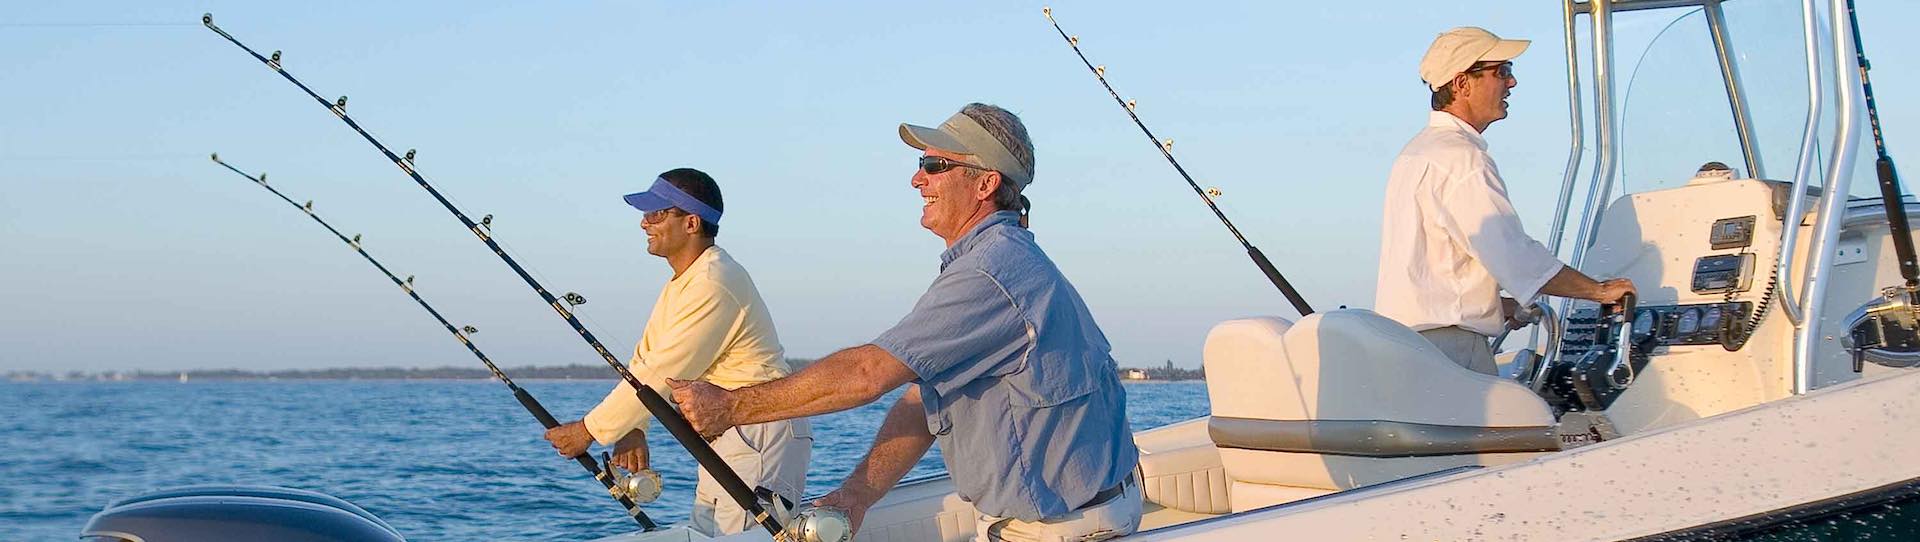 Bucks Party  Fishing Trips Deep Sea Fishing Charters 